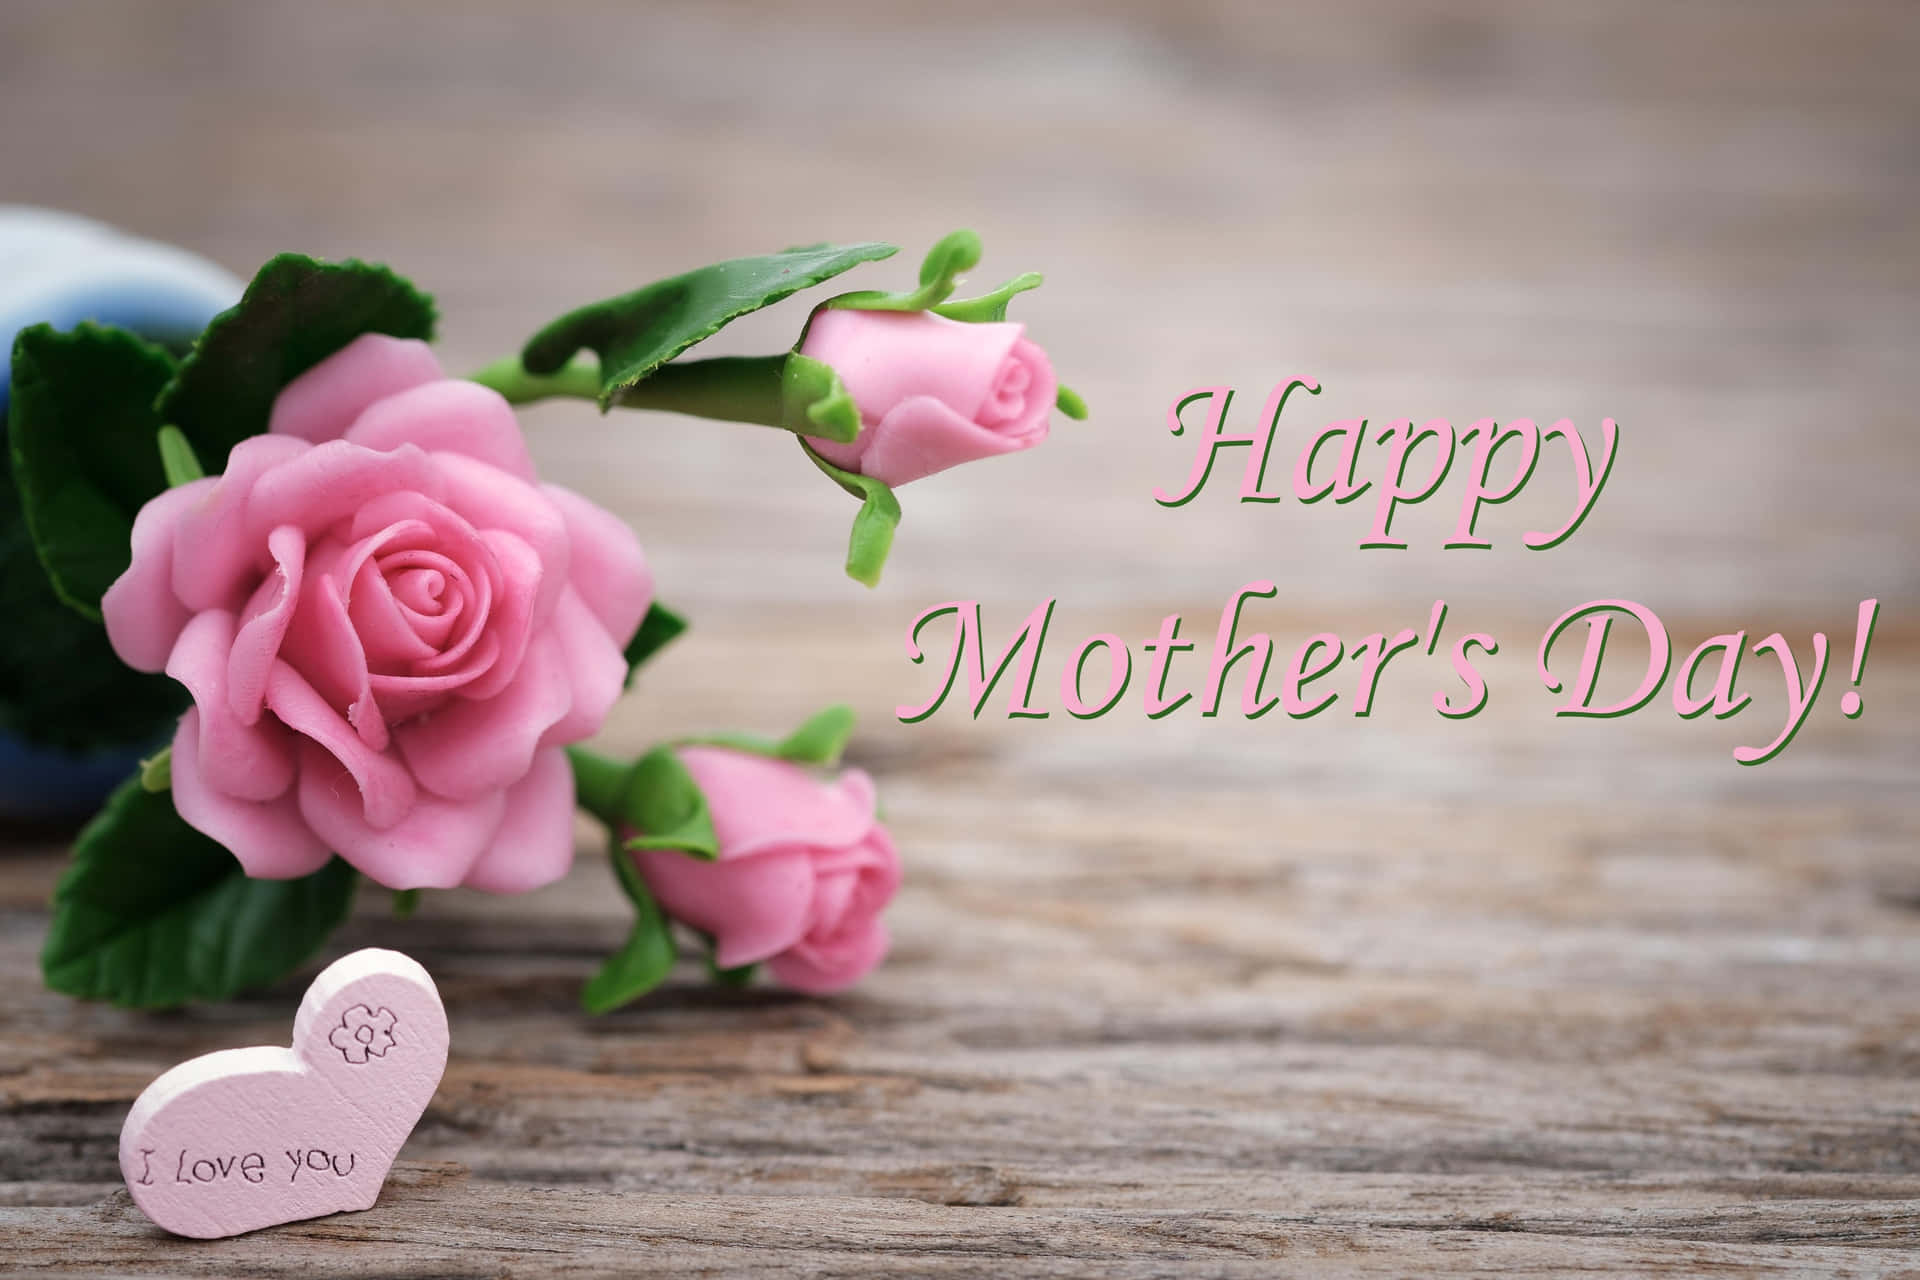 Celebratua Madre In Questo Giorno Speciale E Facciale Sapere Quanto Significhi Davvero Per Te.